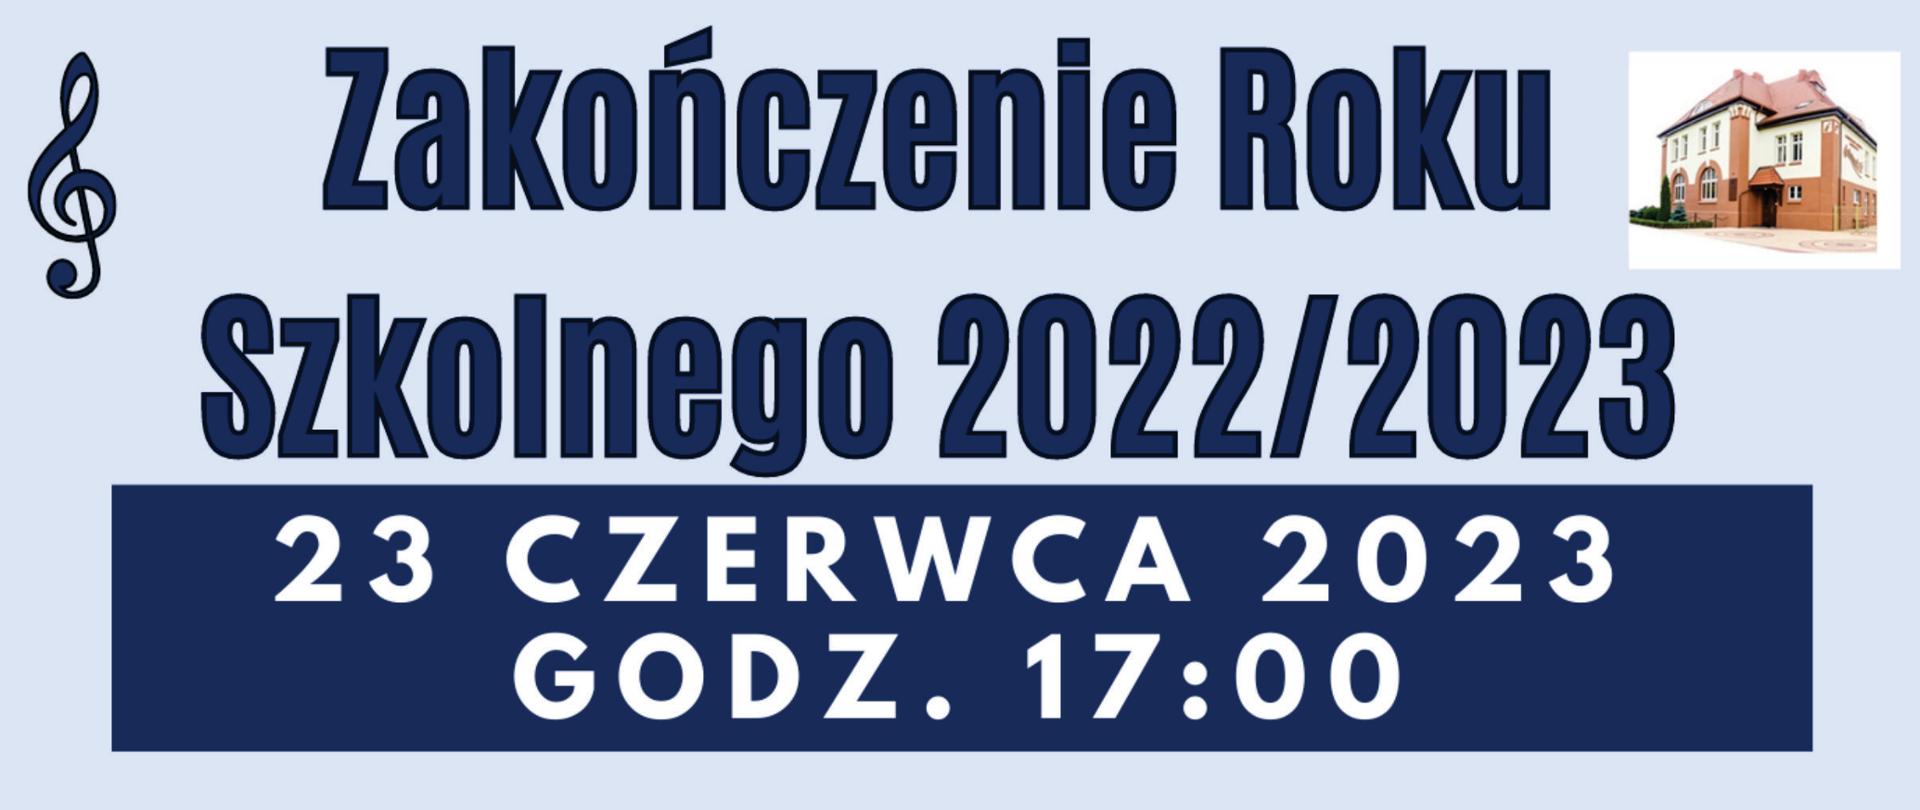 Plakat barwy niebieskiej informujący o zakończeniu roku szkolnego 20222023r. dnia 23 czerwca 2023r. o godz. 1700. Po środku plakatu informacja tekstowa, w prawym górnym rogu zdjęcie szkoły.